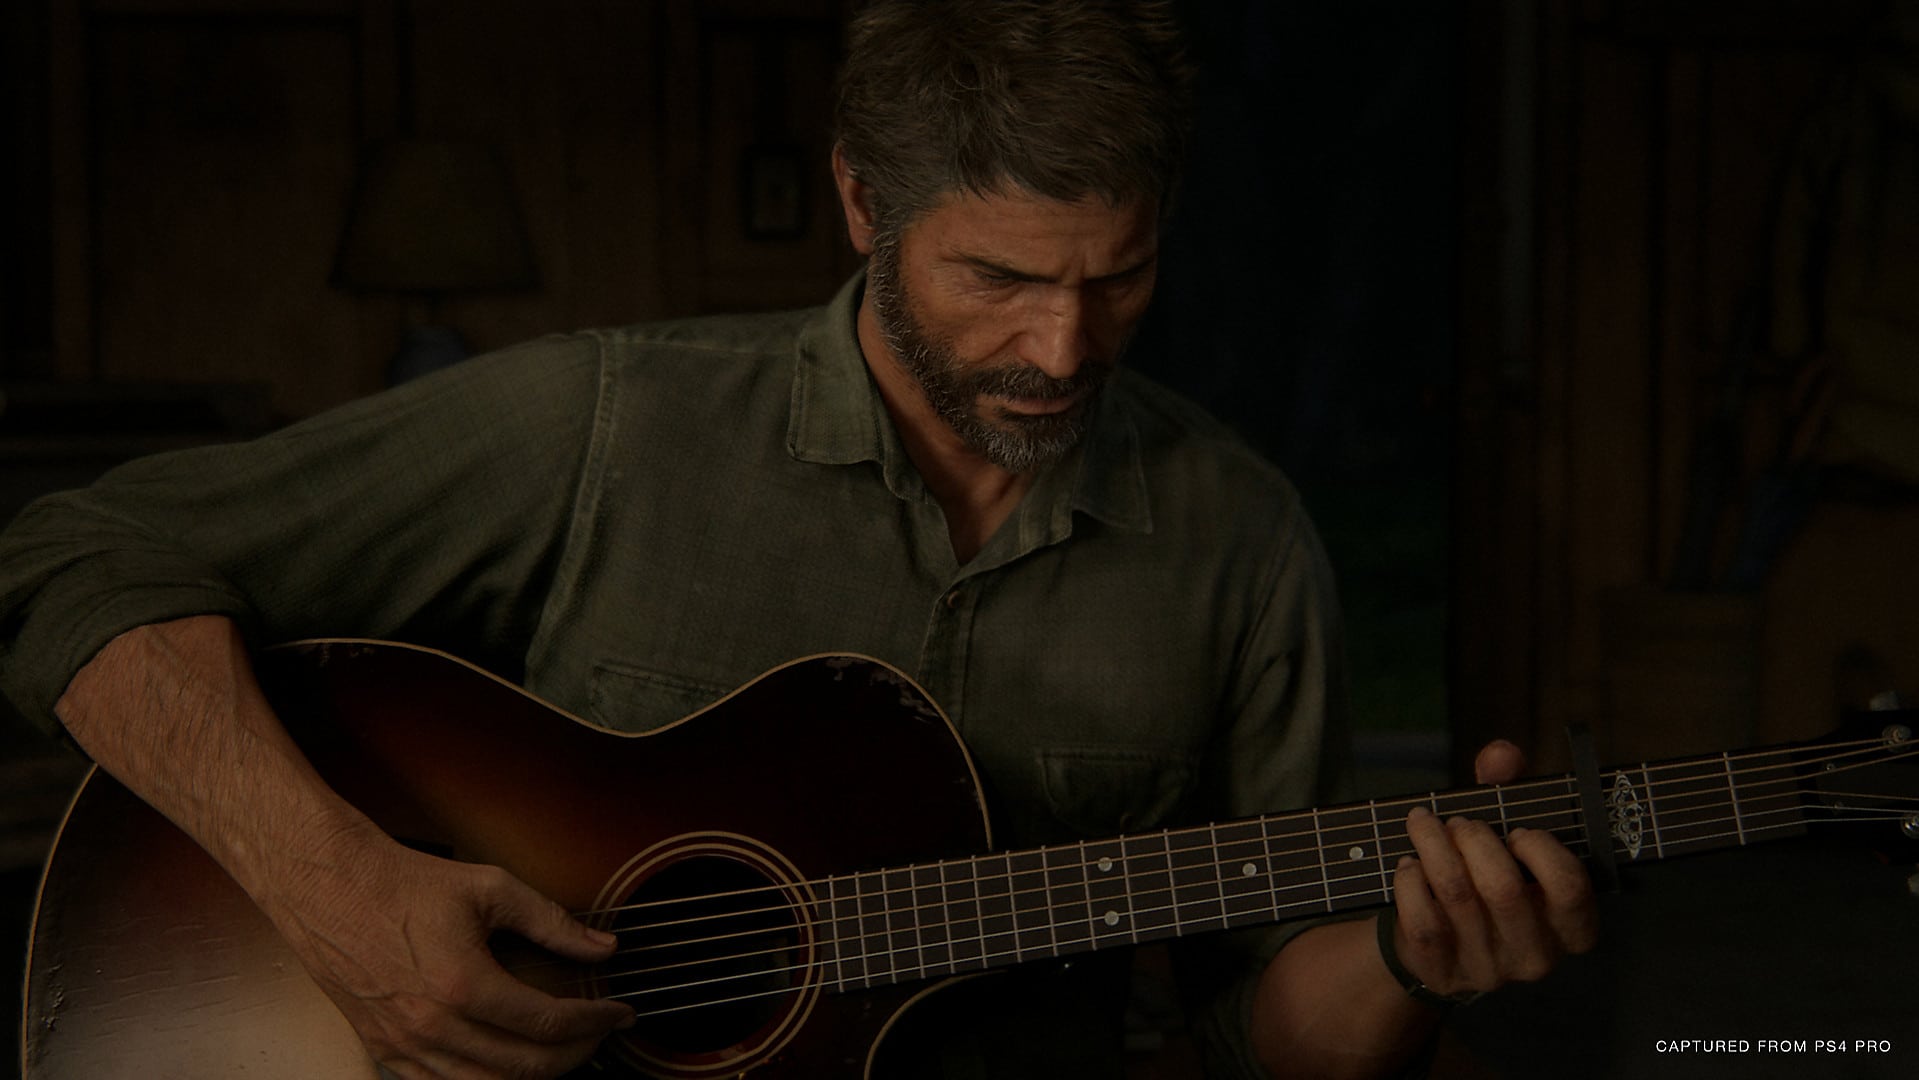 Dibujo de The Last of Us 2 muestra a Joel y Ellie tocando la guitarra juntos - GamersRD